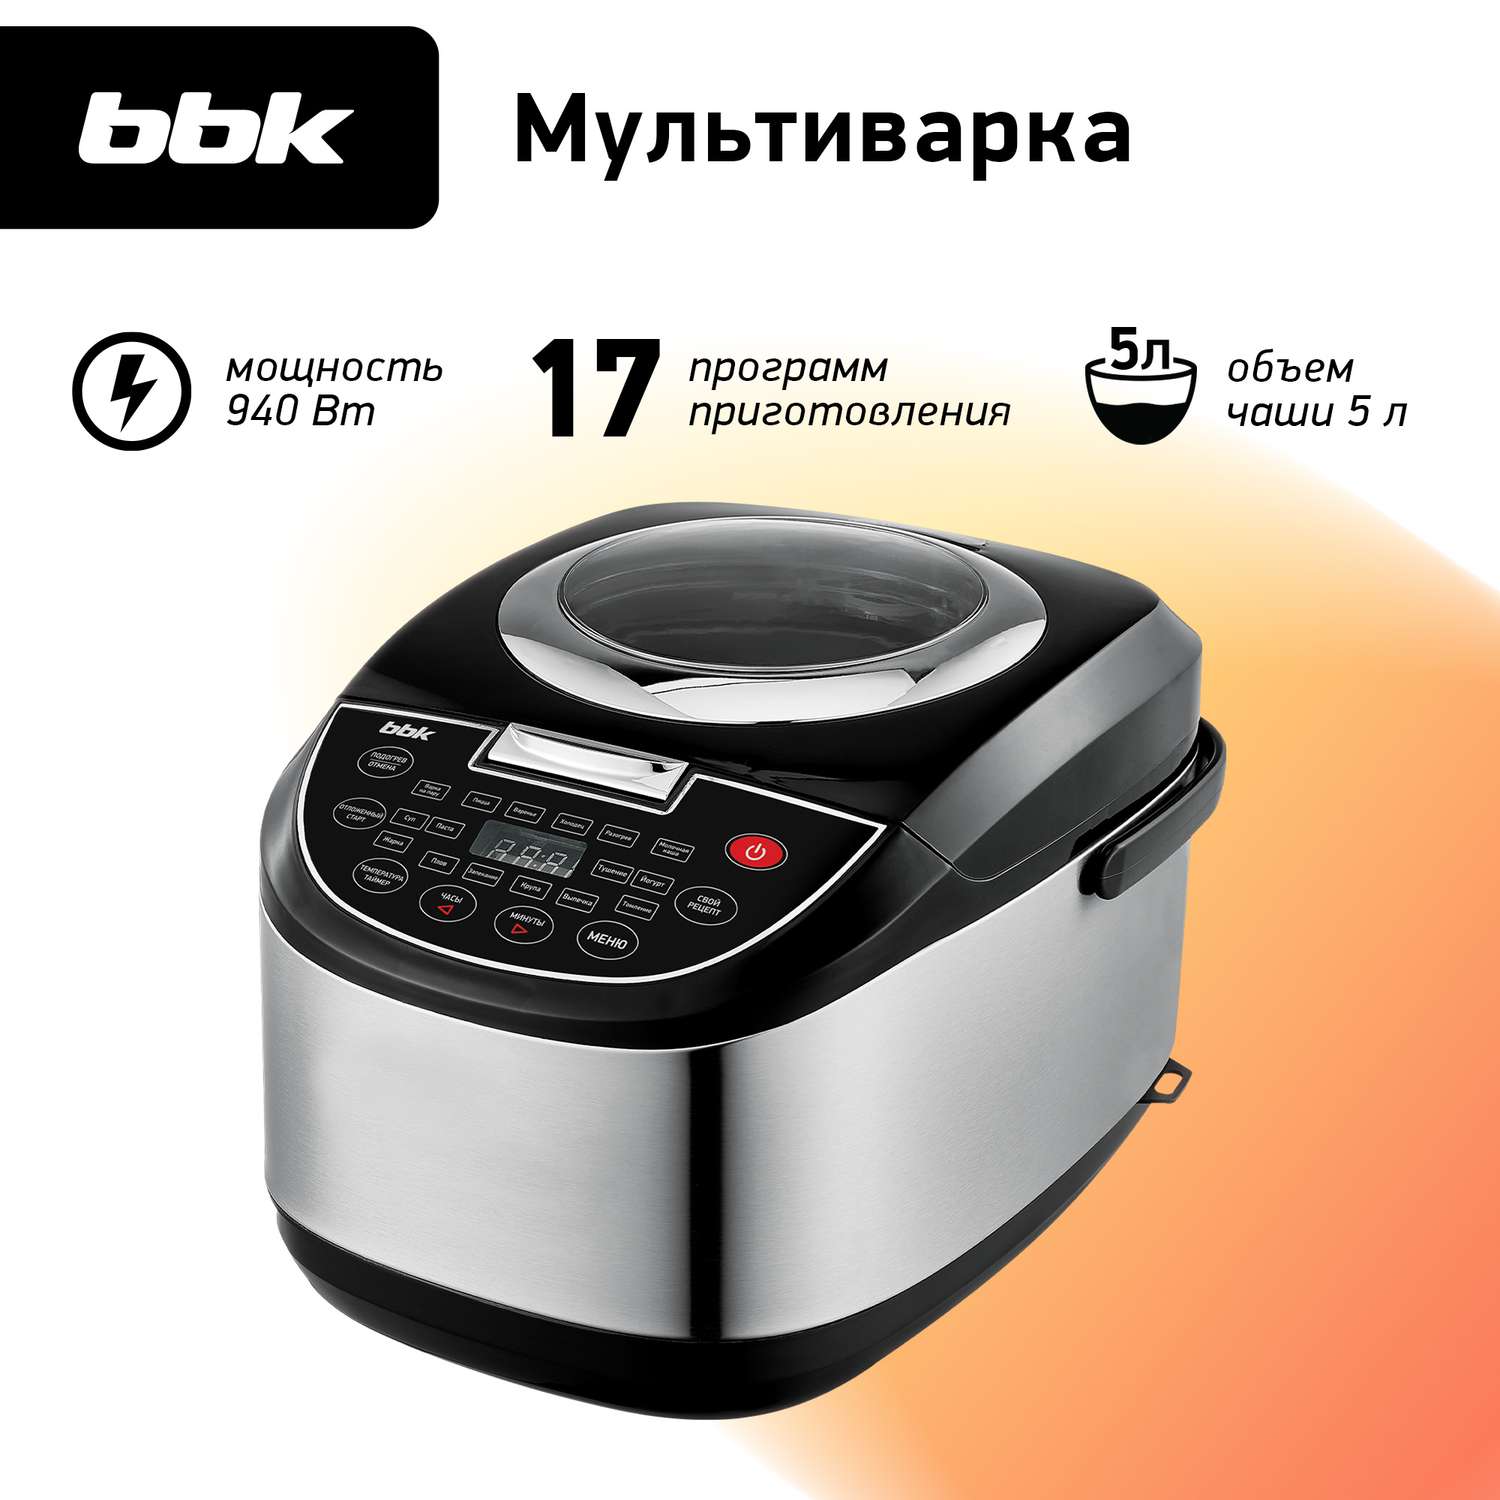 Мультиварка BBK BMC052 черный 17 автоматических программ приготовления - фото 1